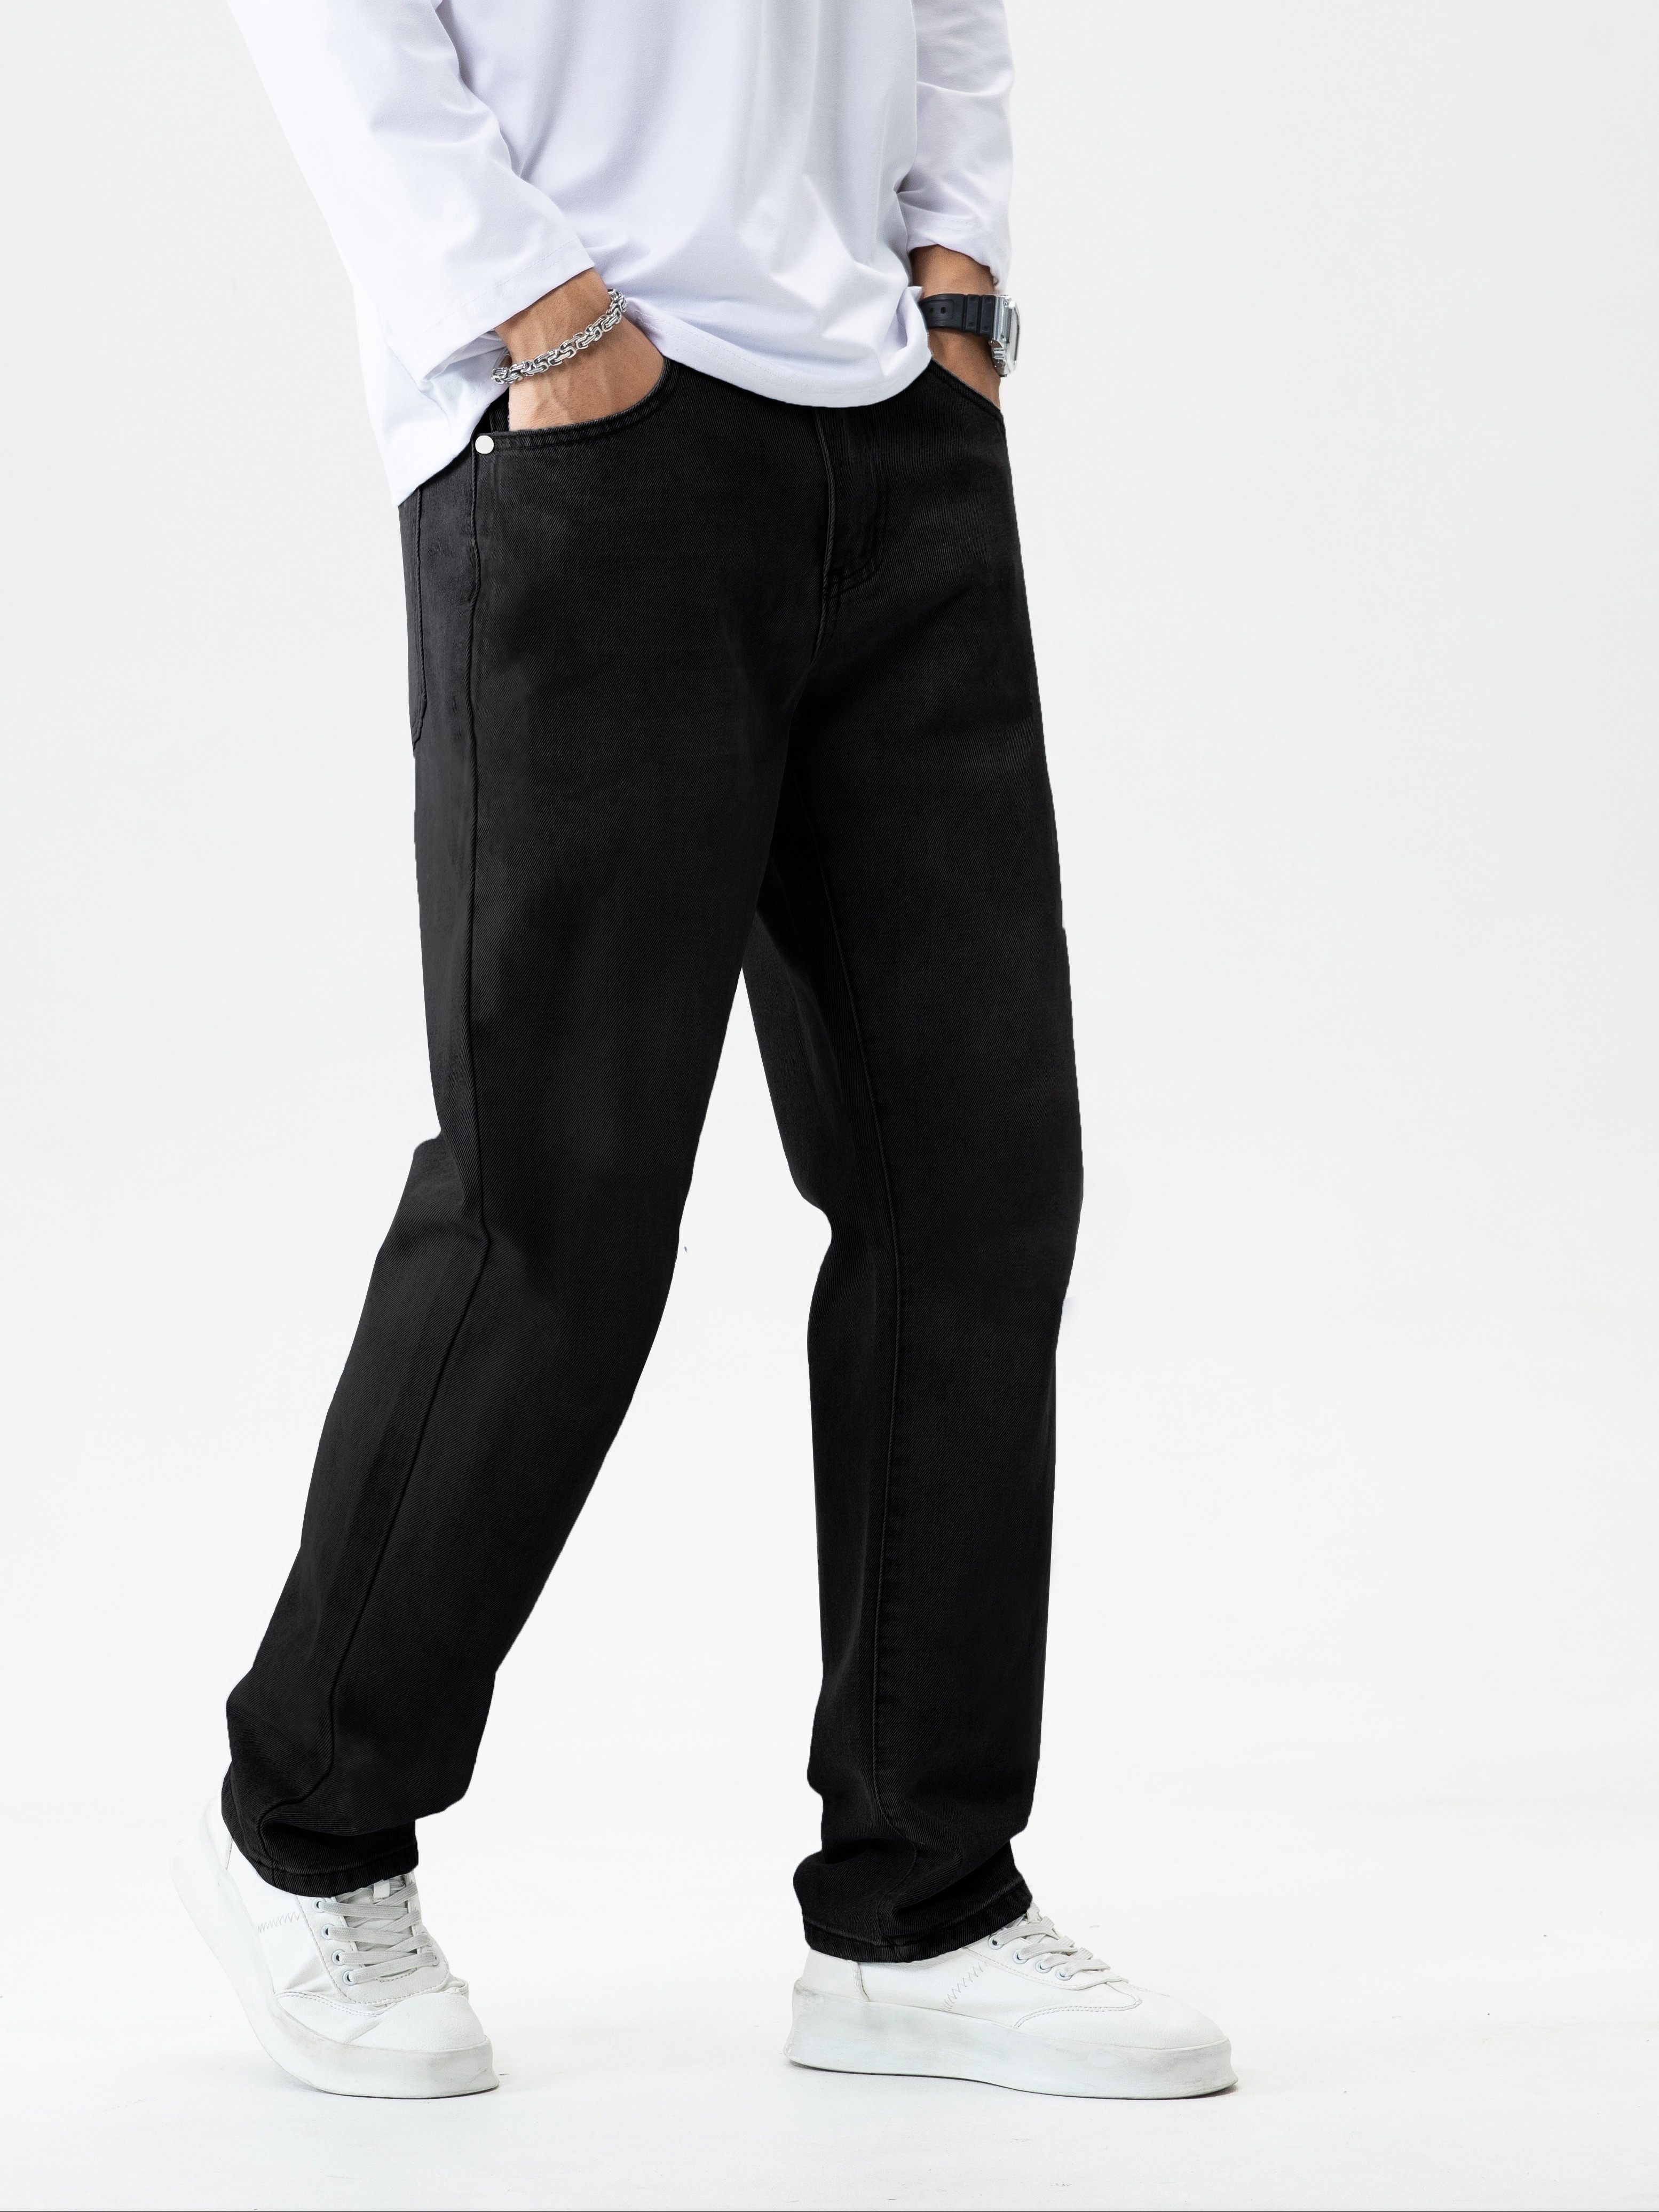 Джинсы свободного покроя классического дизайна, мужские повседневные джинсовые брюки в уличном стиле на все сезоны